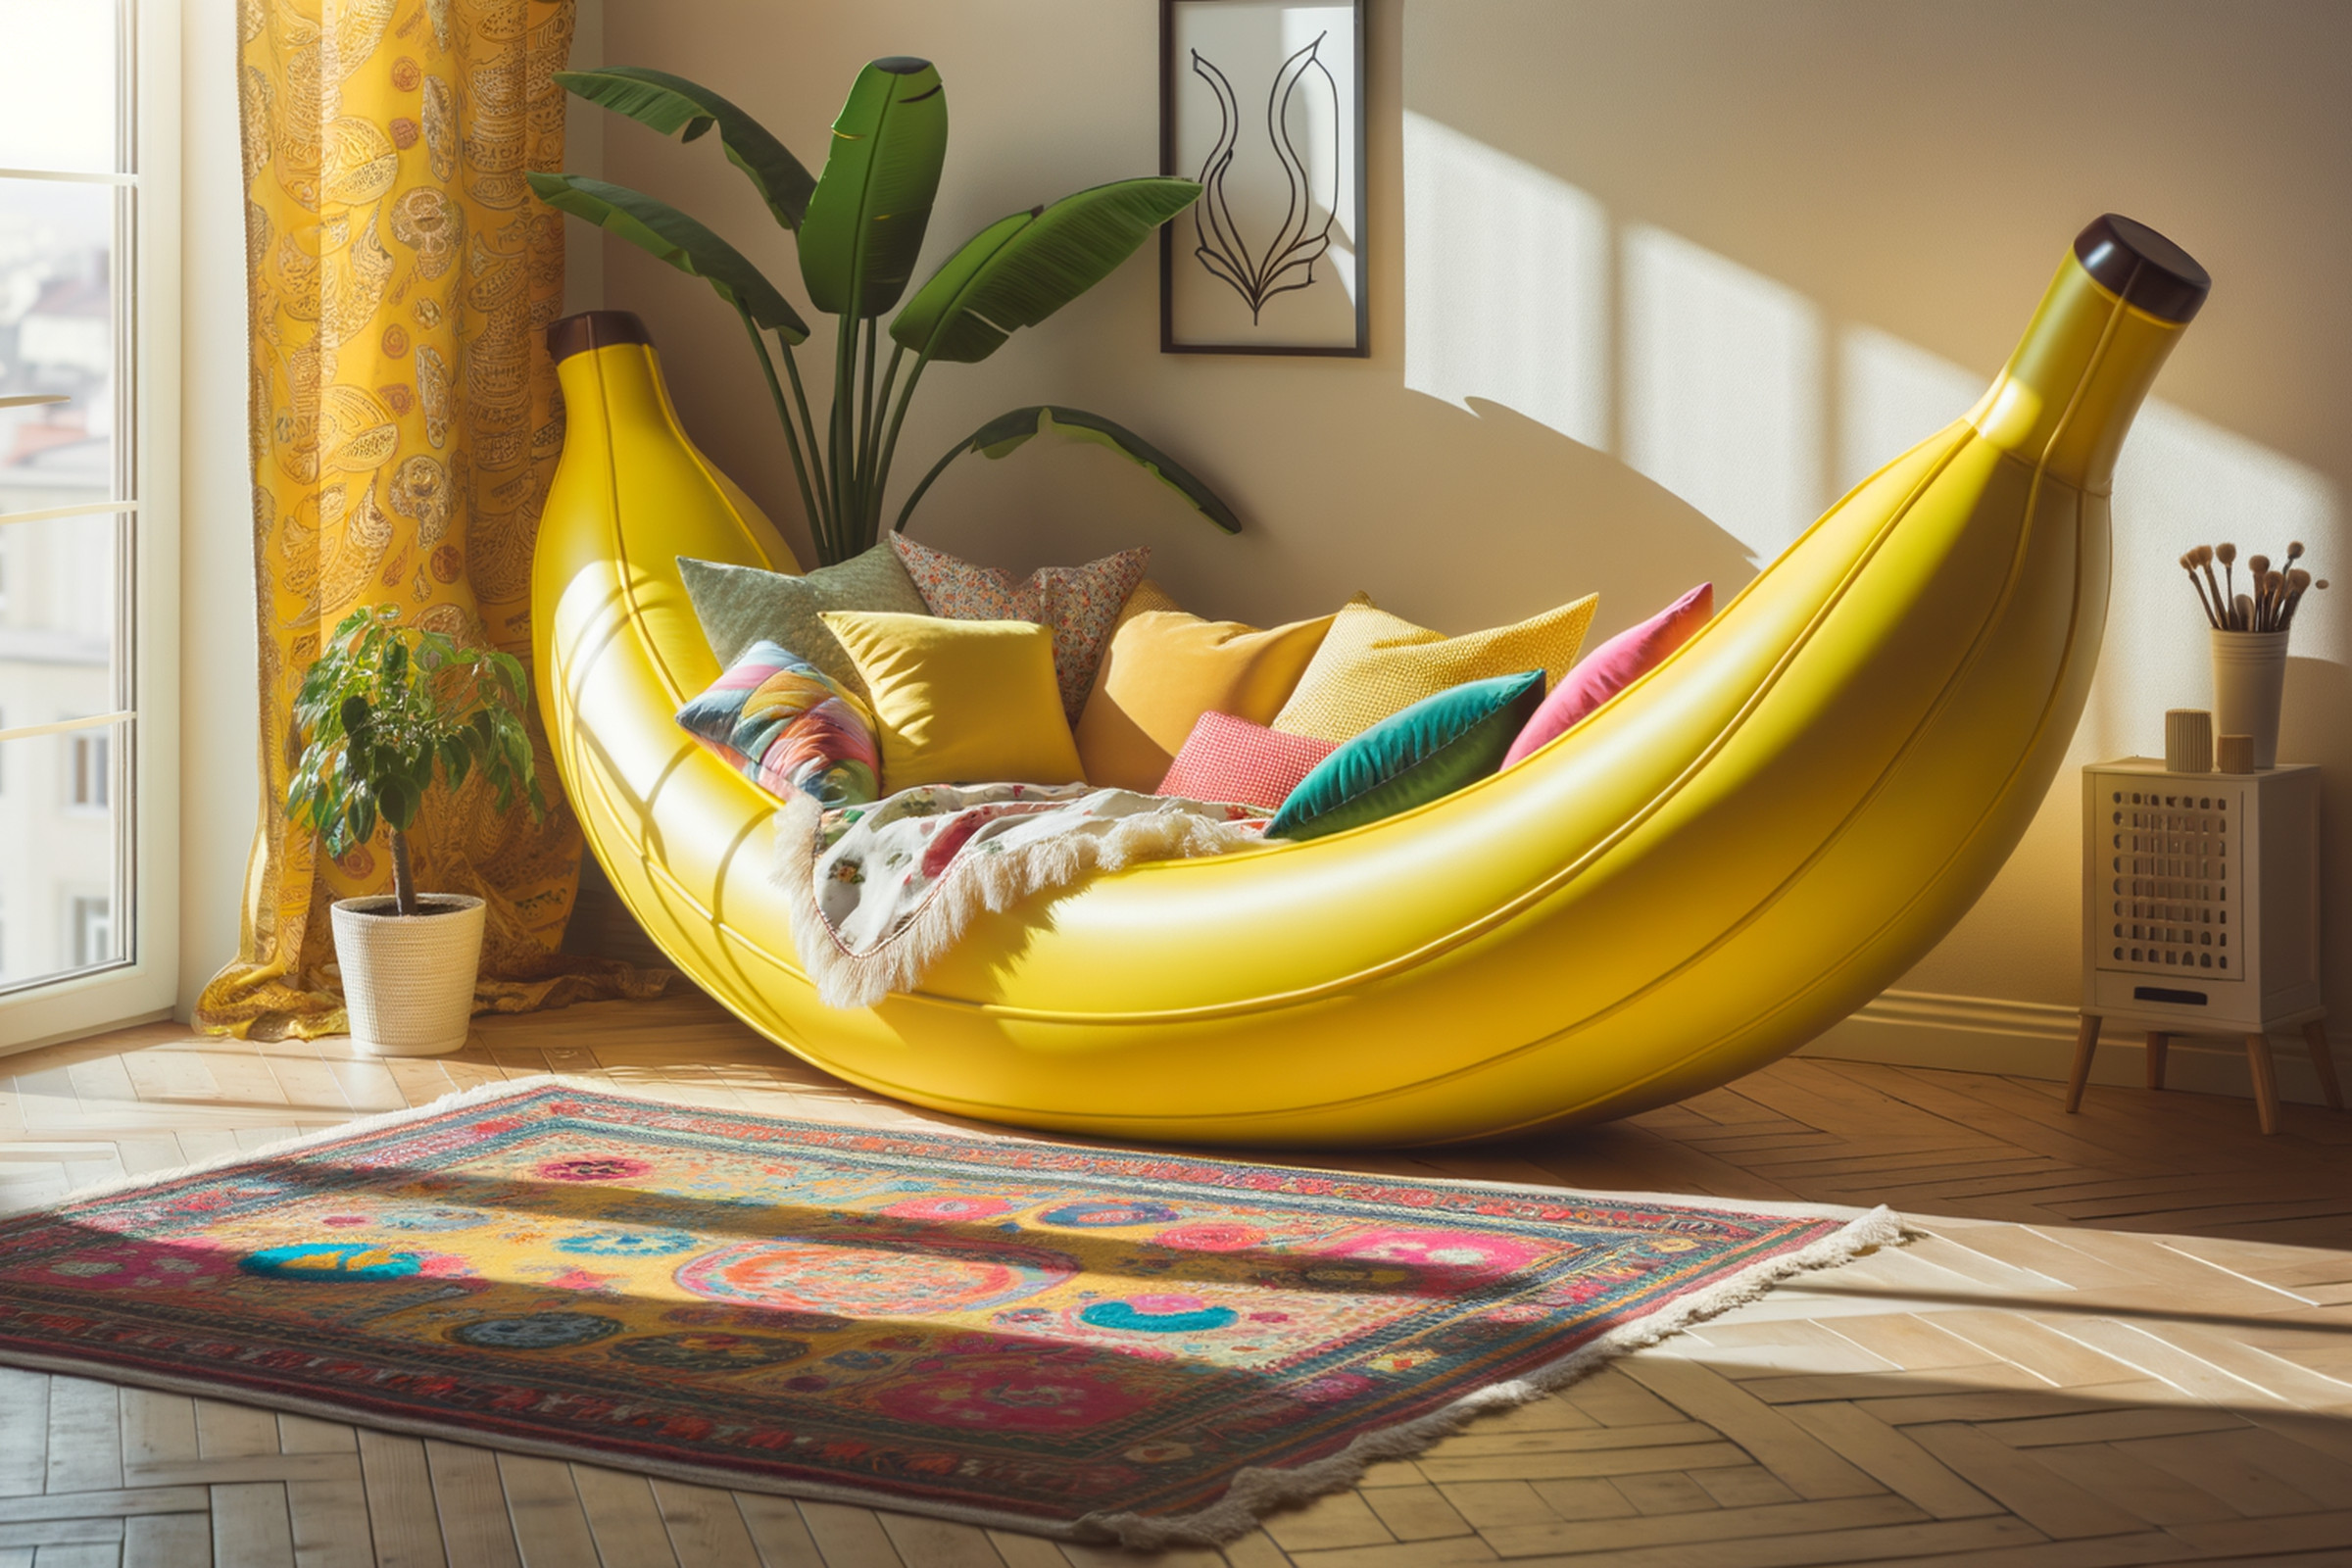 Banana bed AI art